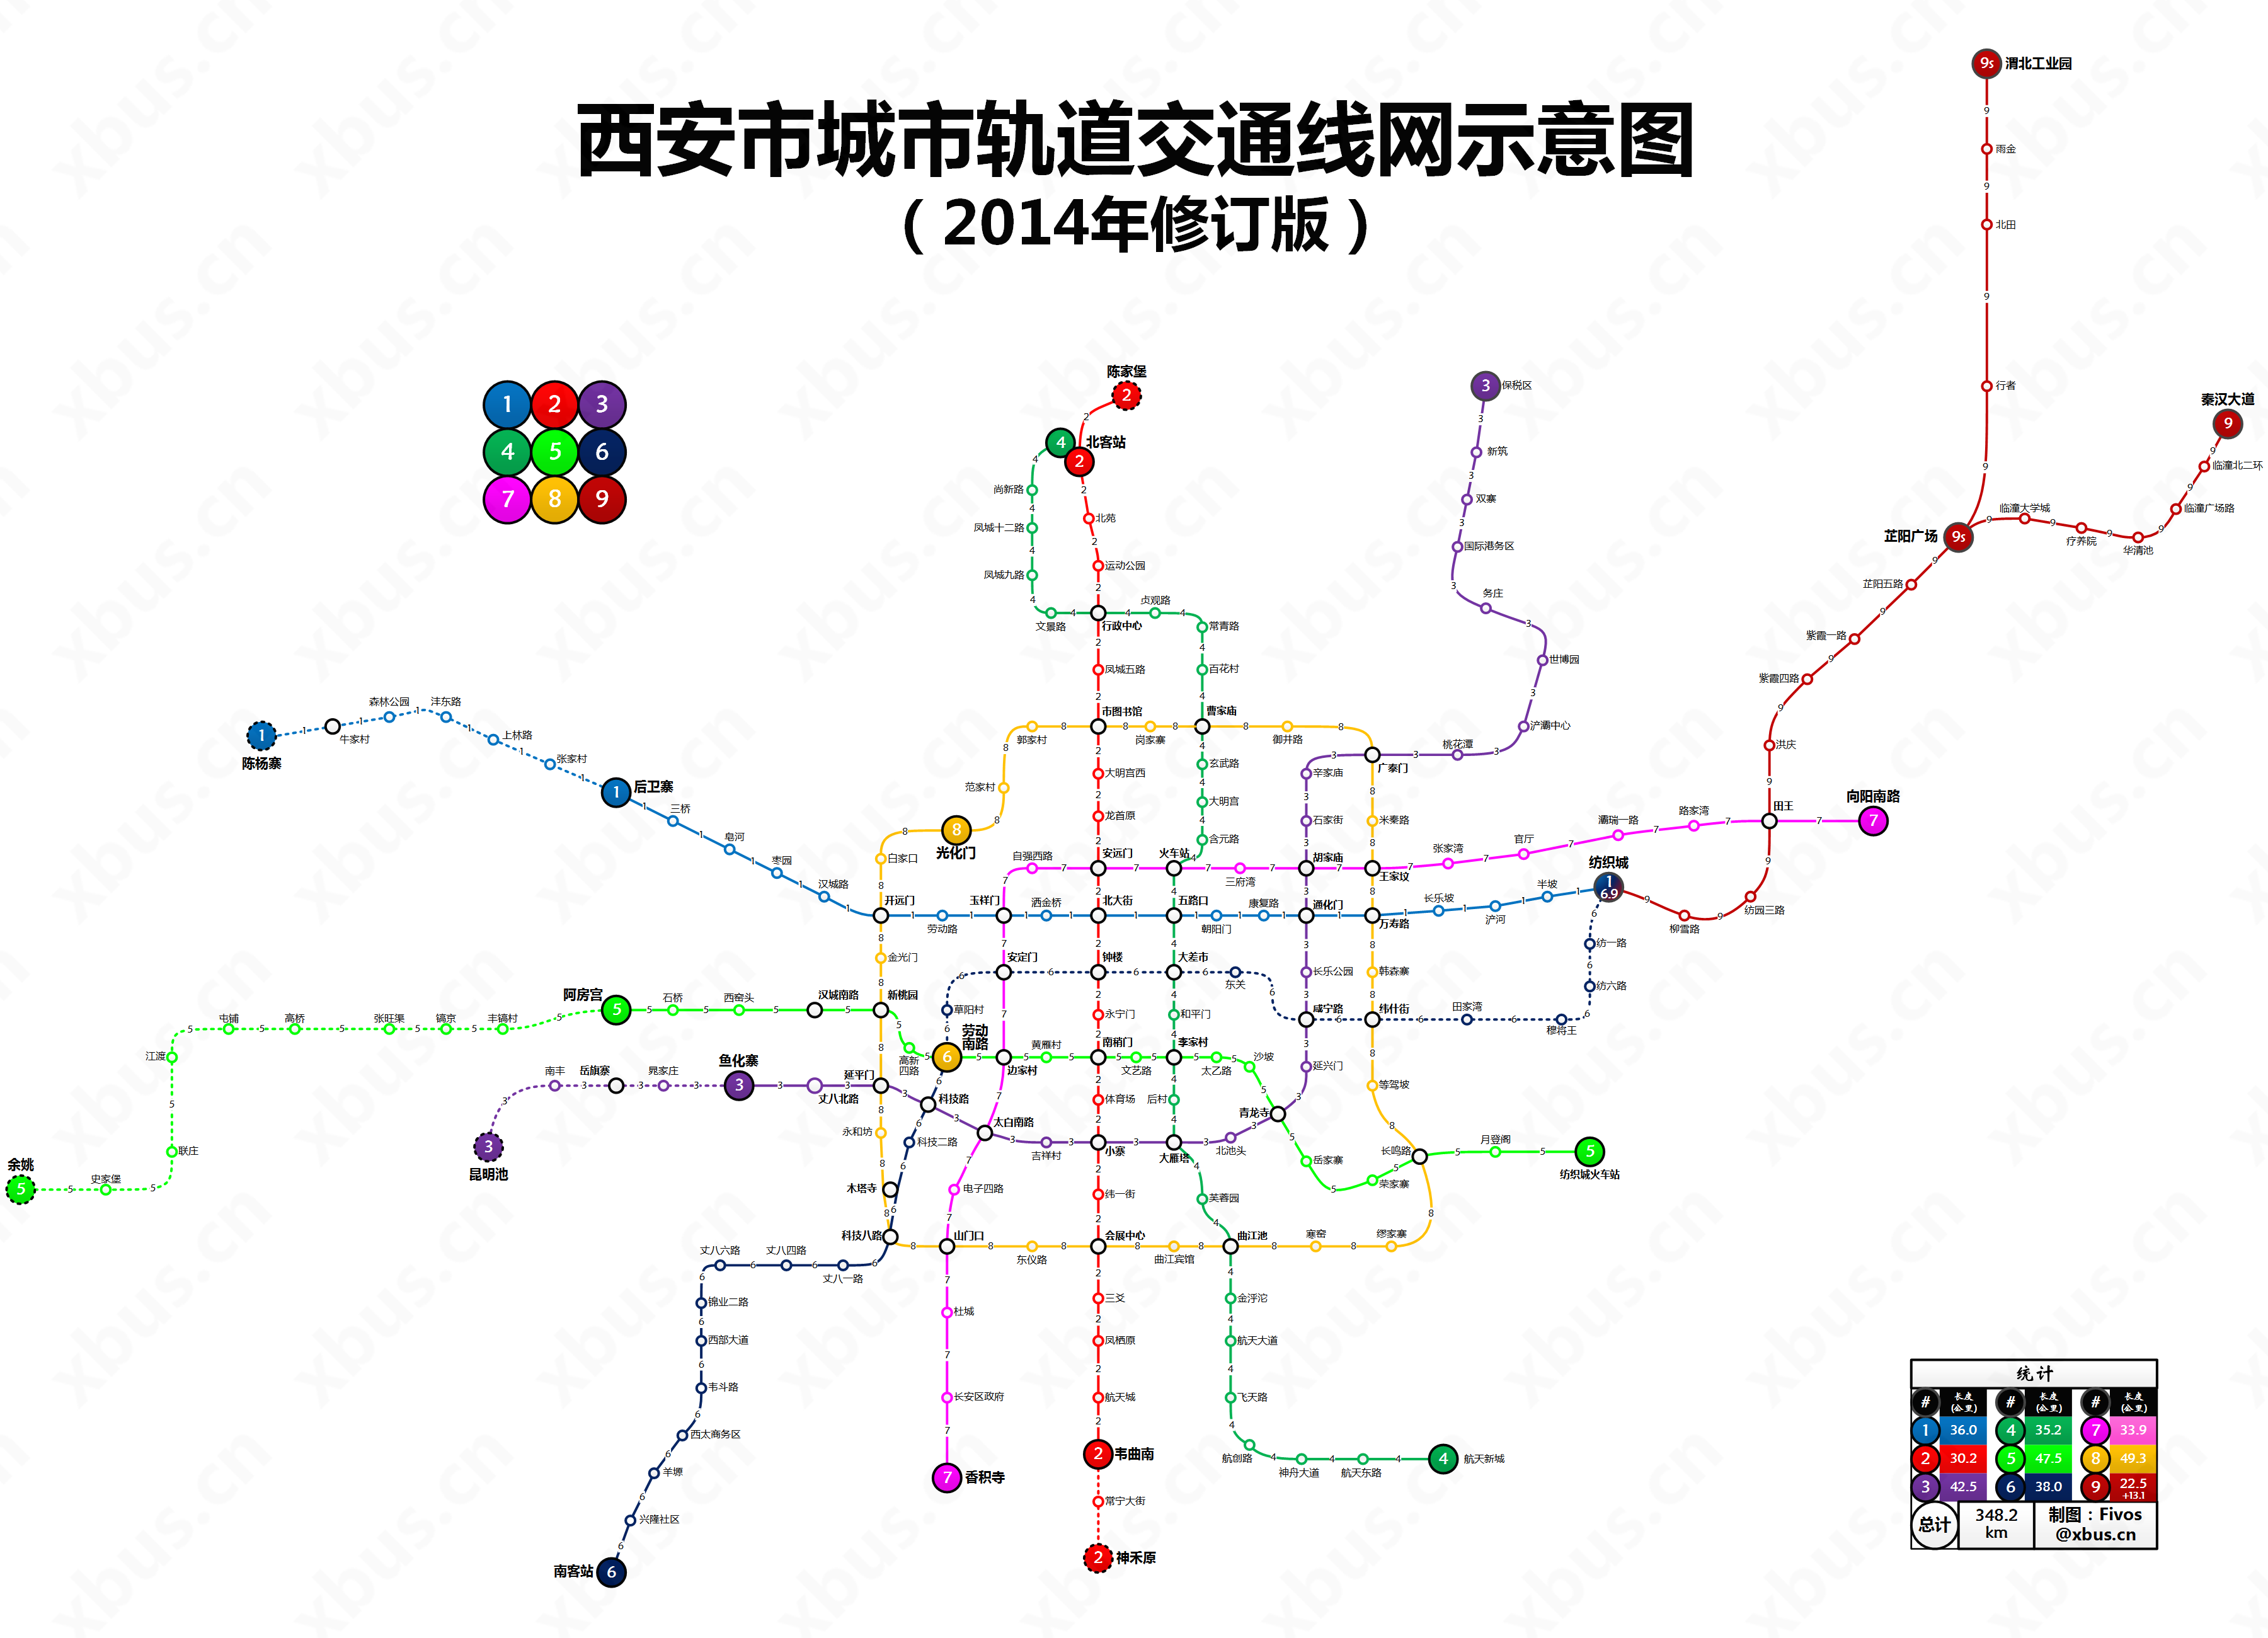 西安地铁2014规划图(1-8号线规划)终于找到了